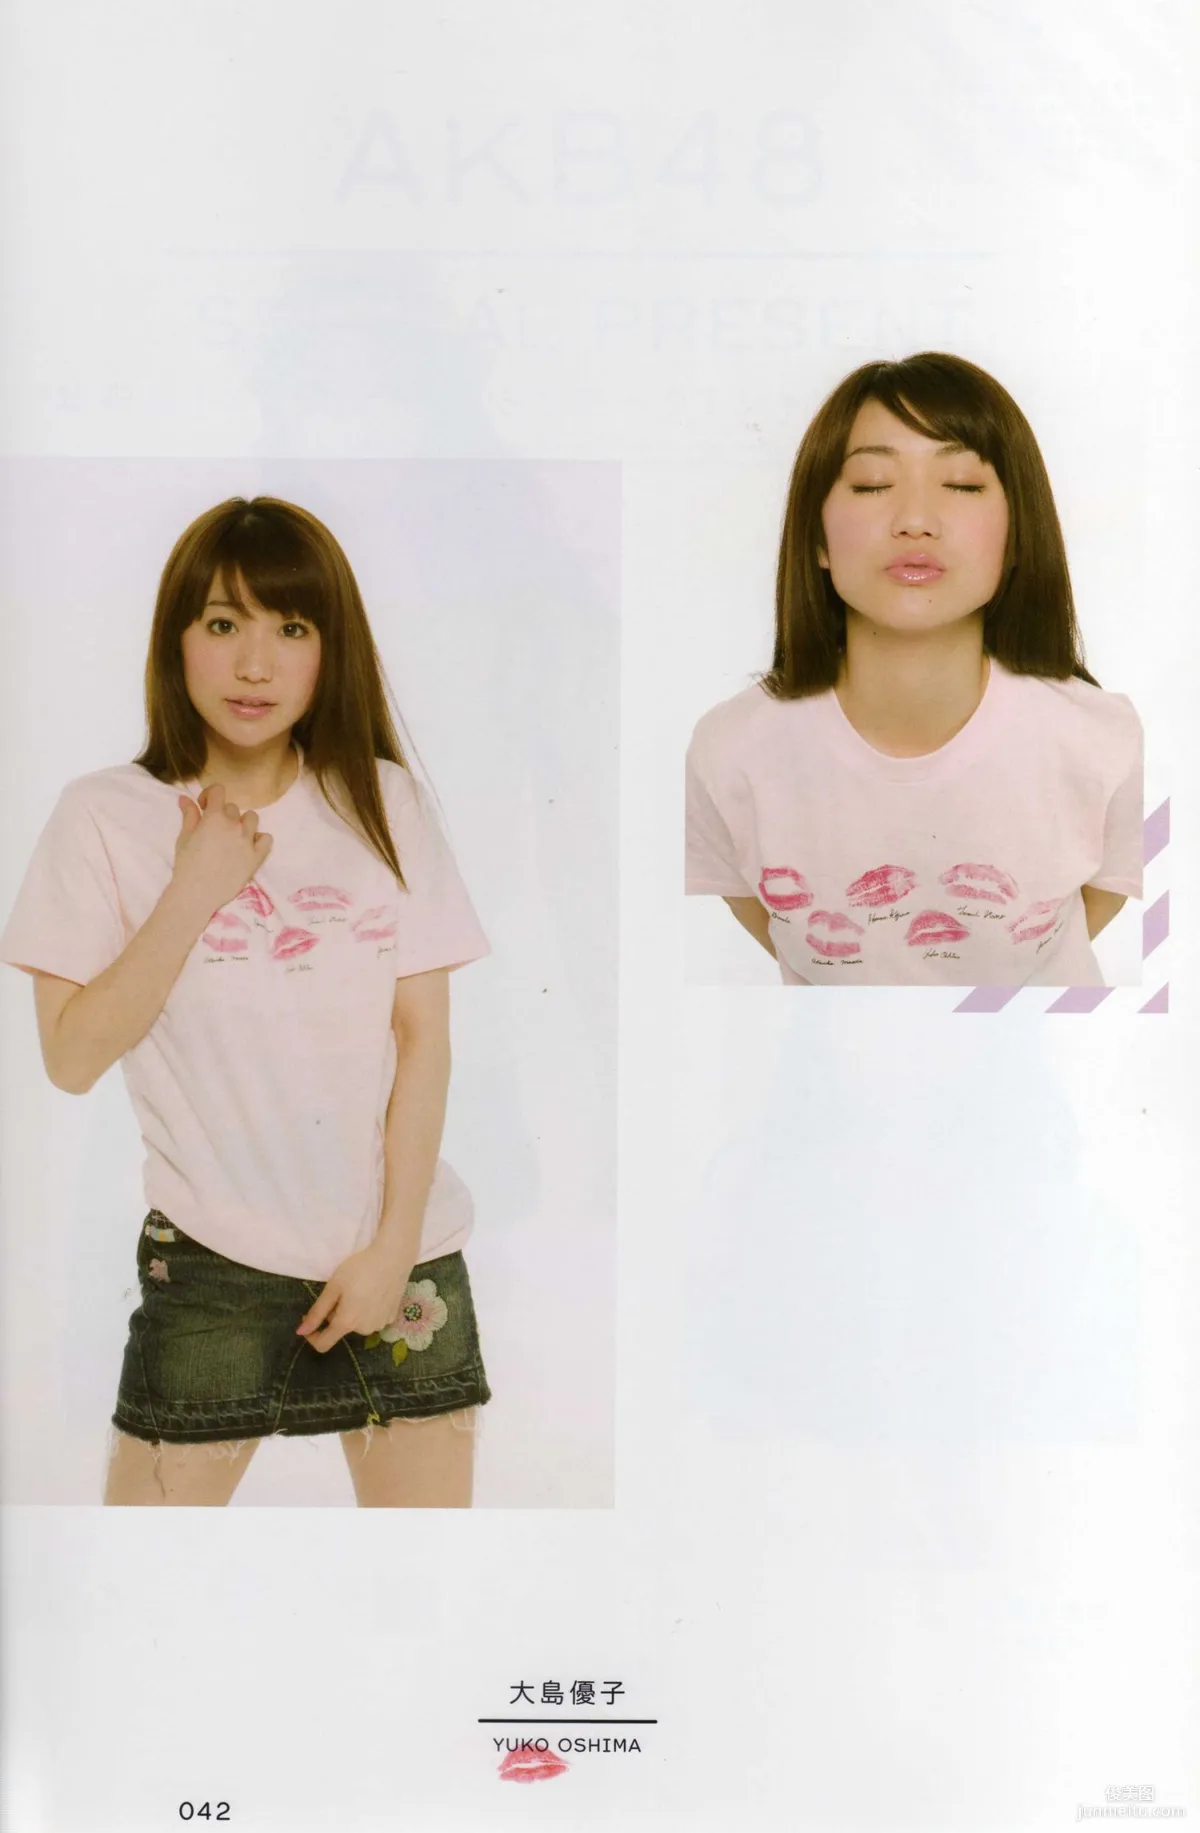 日本AKB48女子组合《2013 Fashion Book内衣秀》写真集36